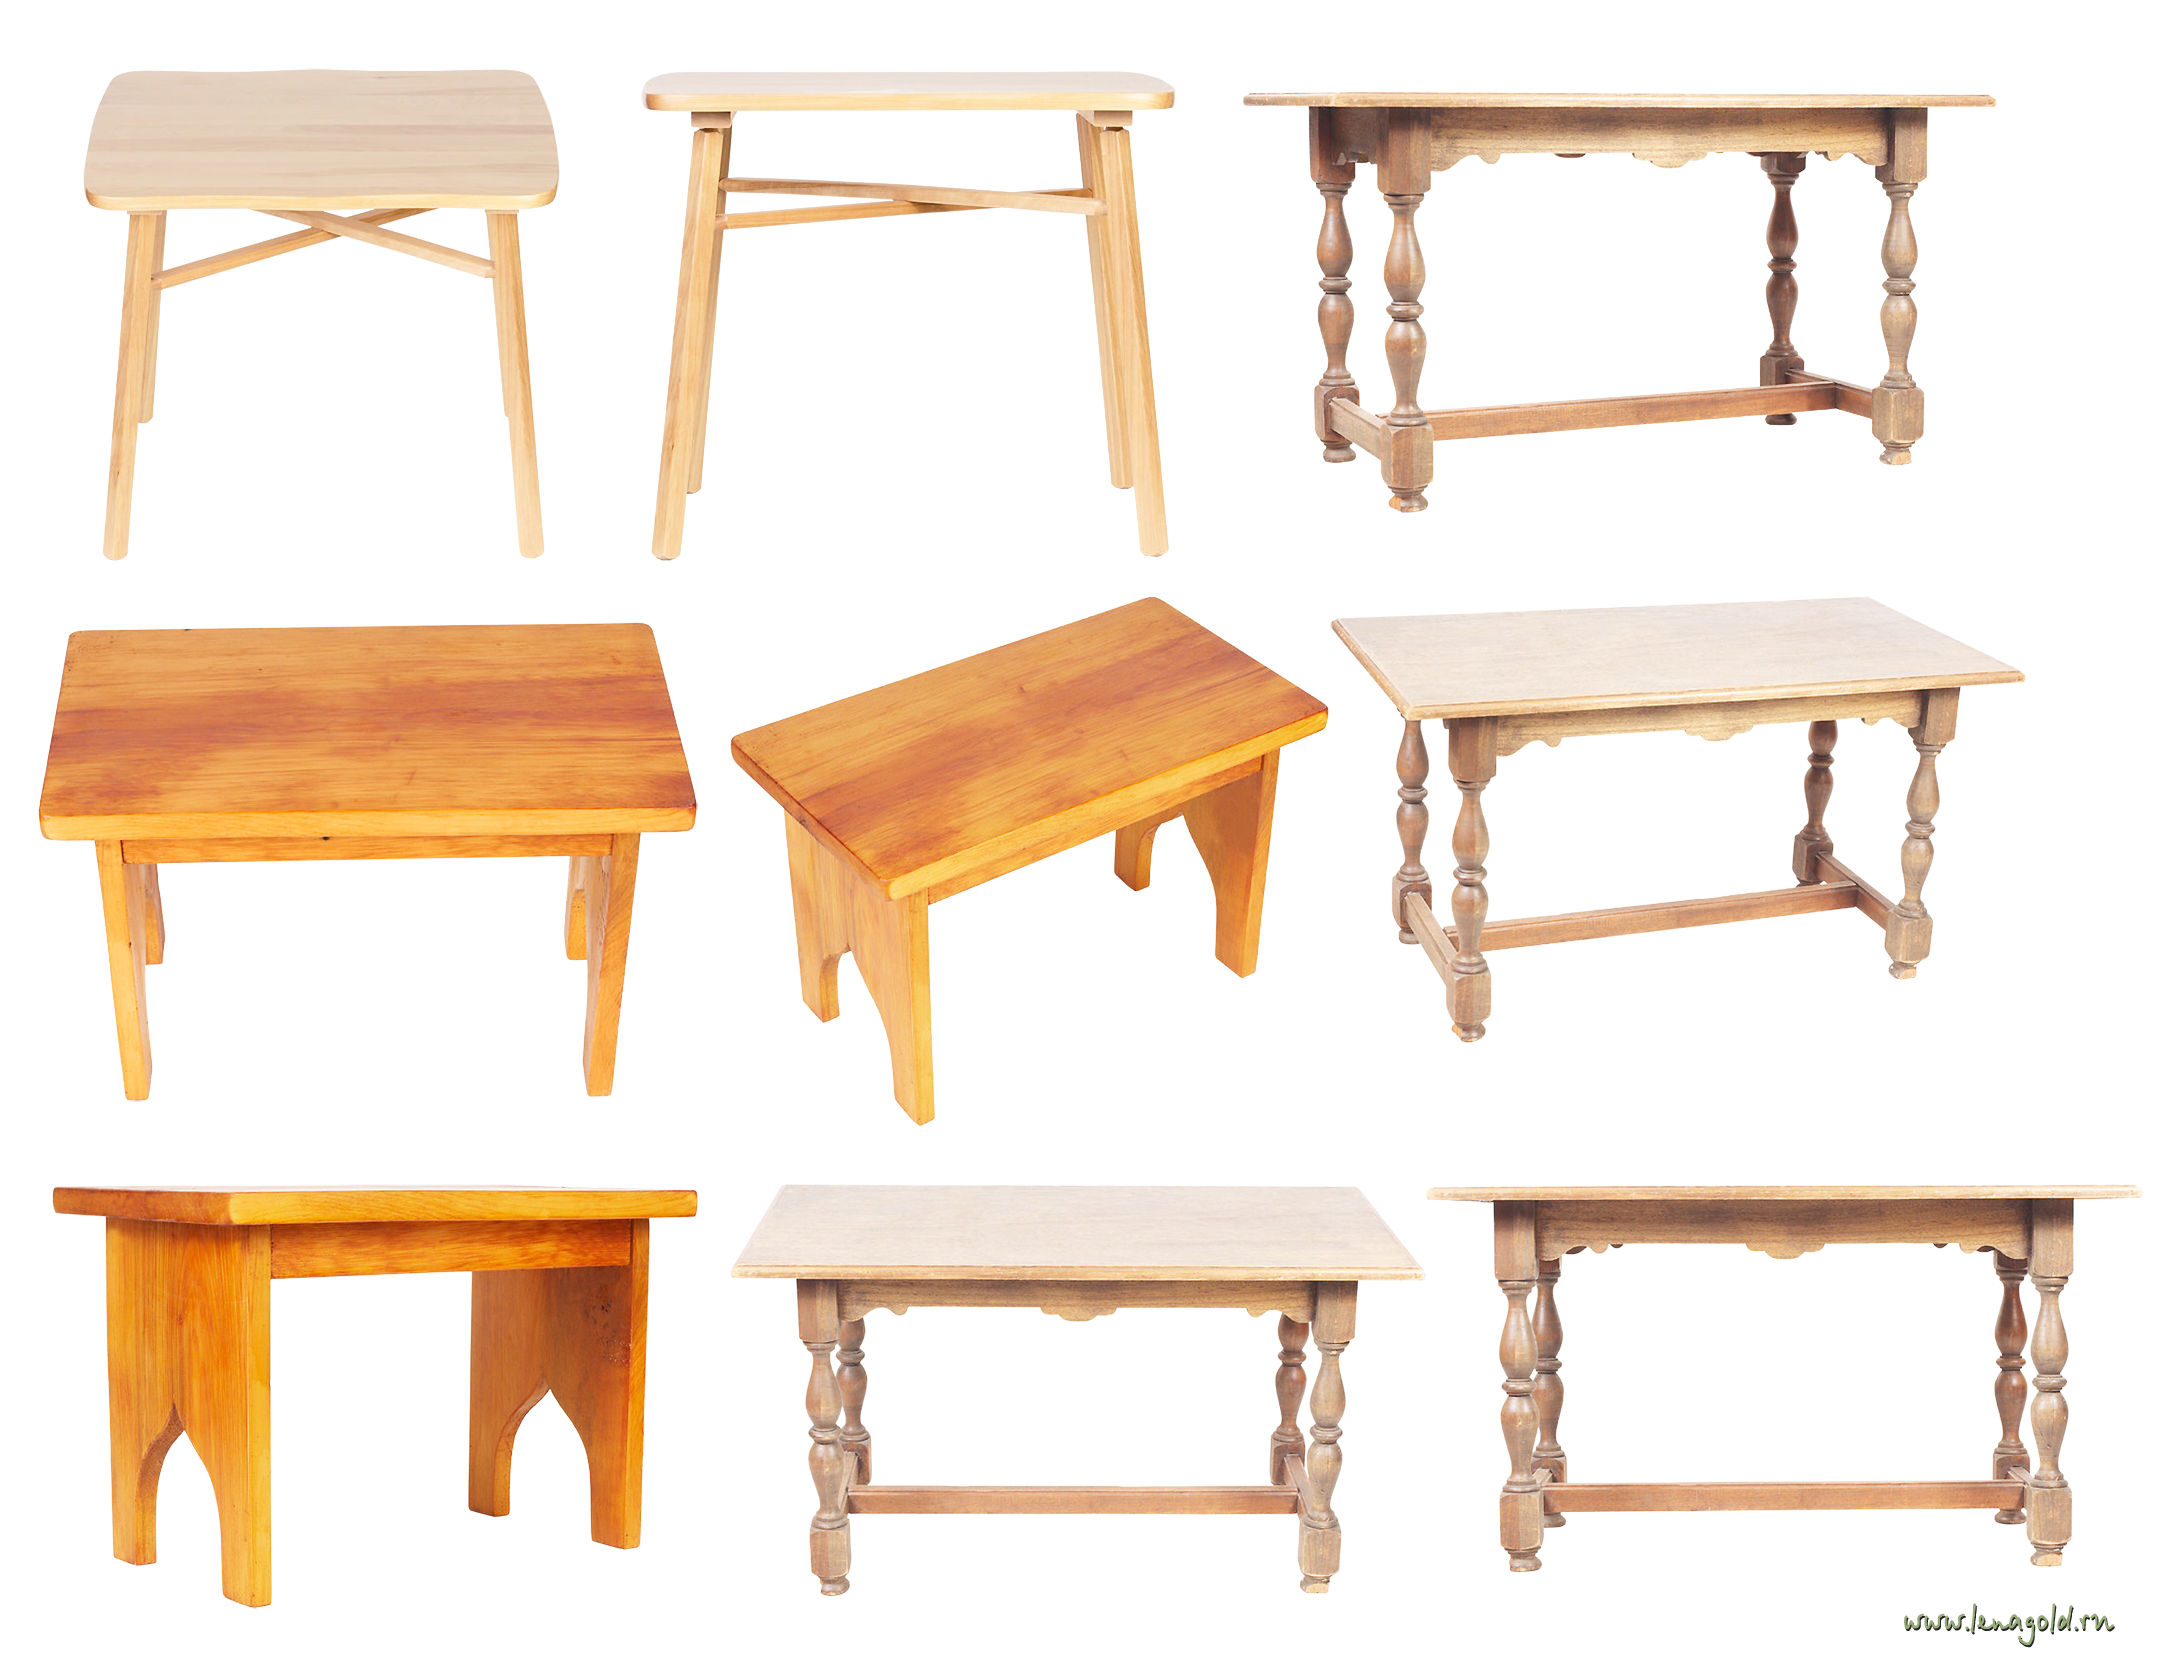 Mesa de madeira